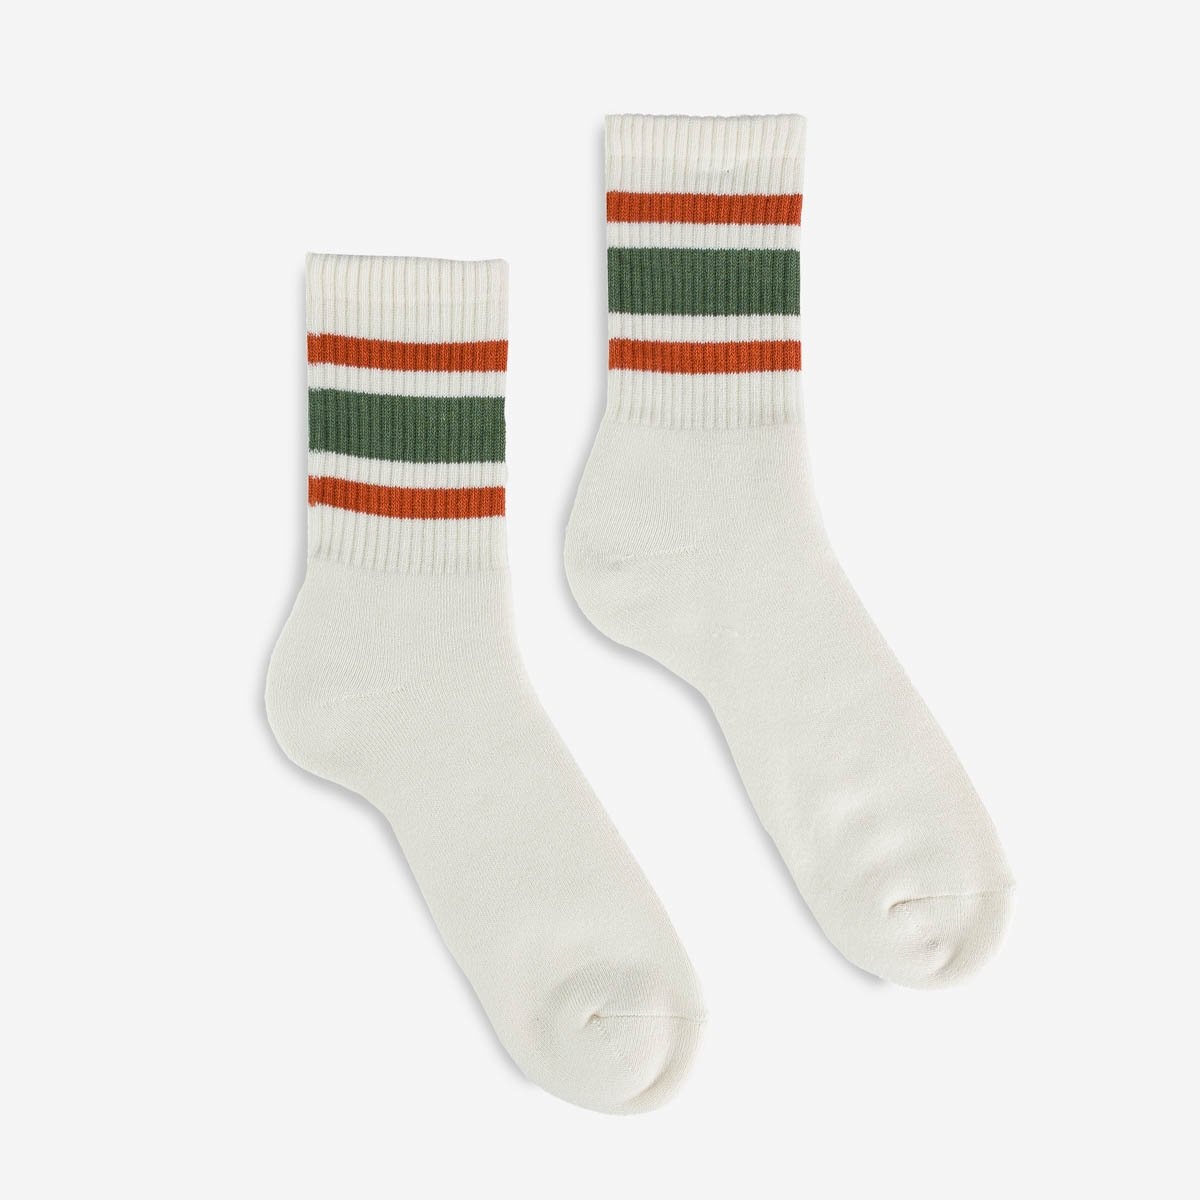 DEC-80-S-GRN Decka 80s Skater Socks - Short Length - Green - 1